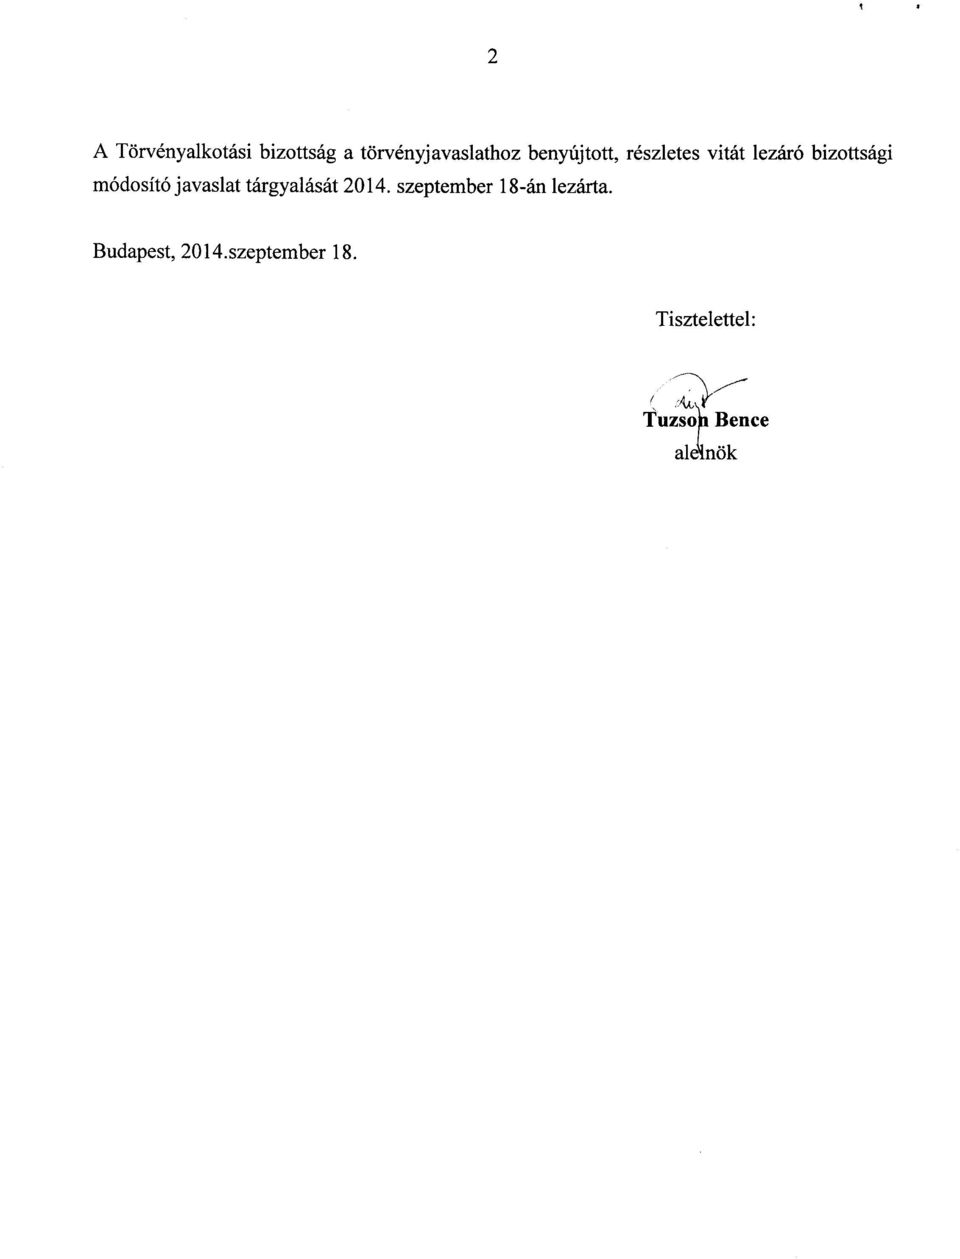 javaslat tárgyalását 2014. szeptember 18-án lezárta.